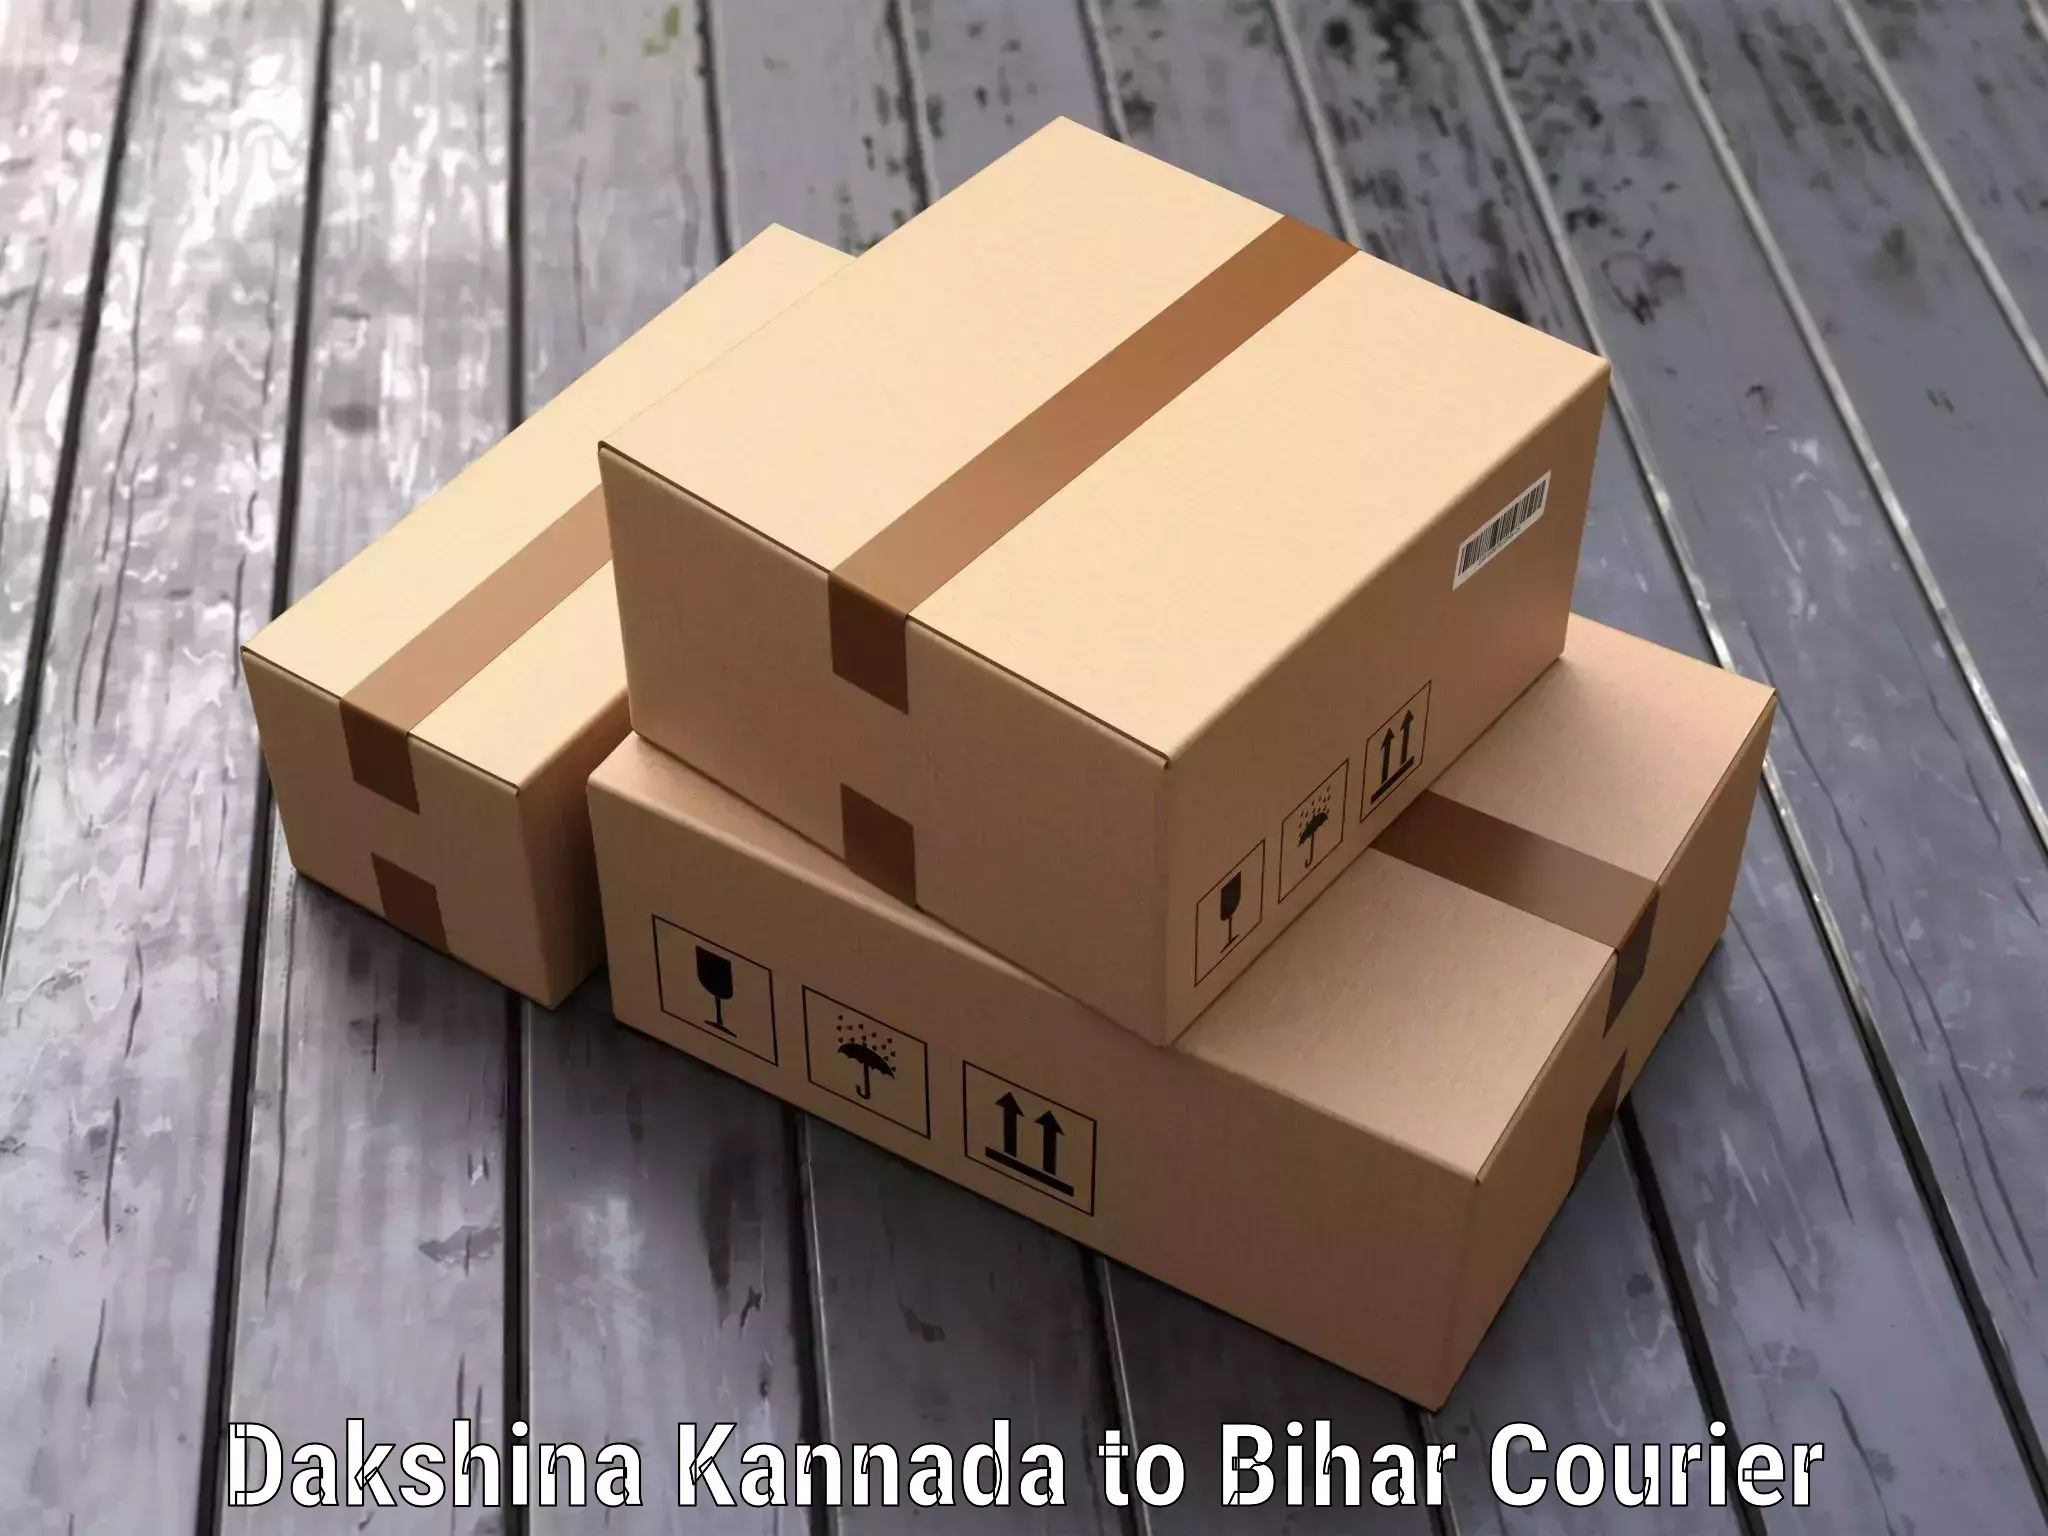 Luggage transport consulting Dakshina Kannada to Bihar